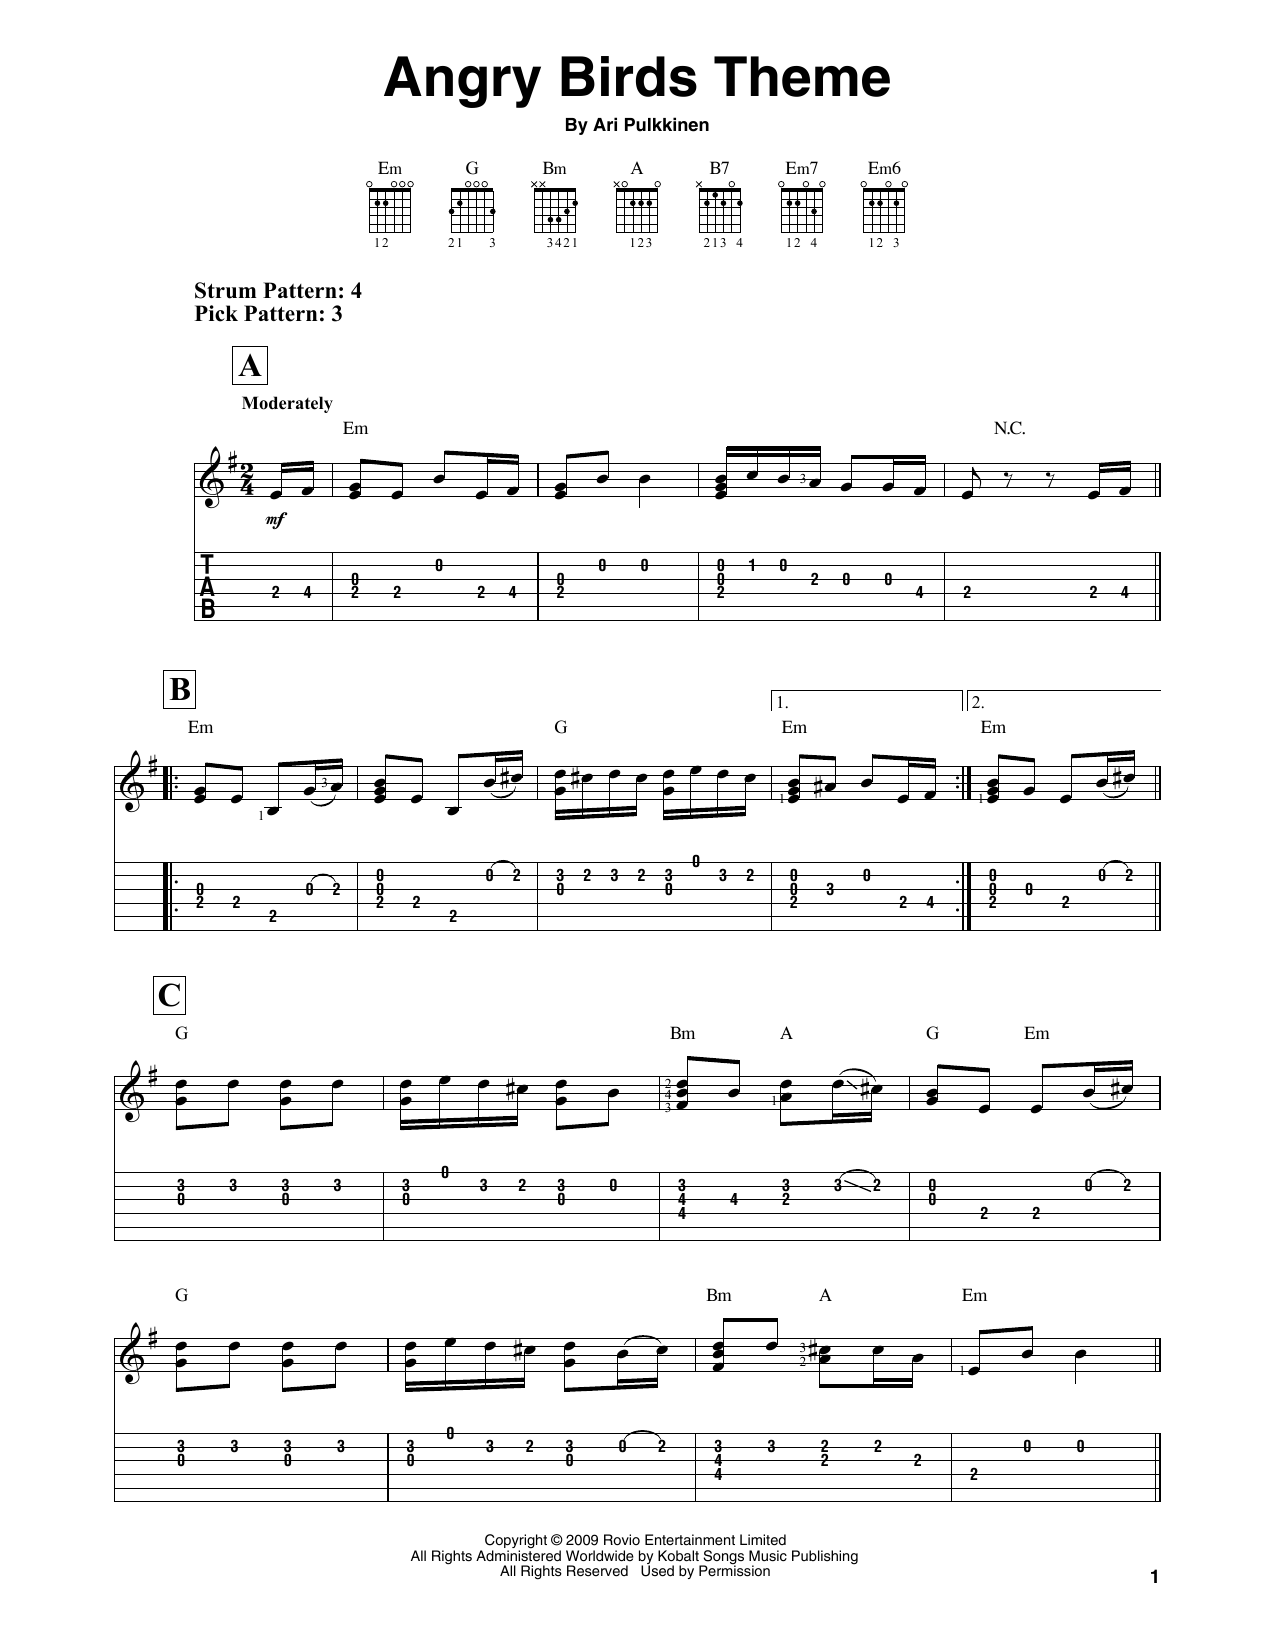 Download Ari Pulkkinen Angry Birds Theme Sheet Music